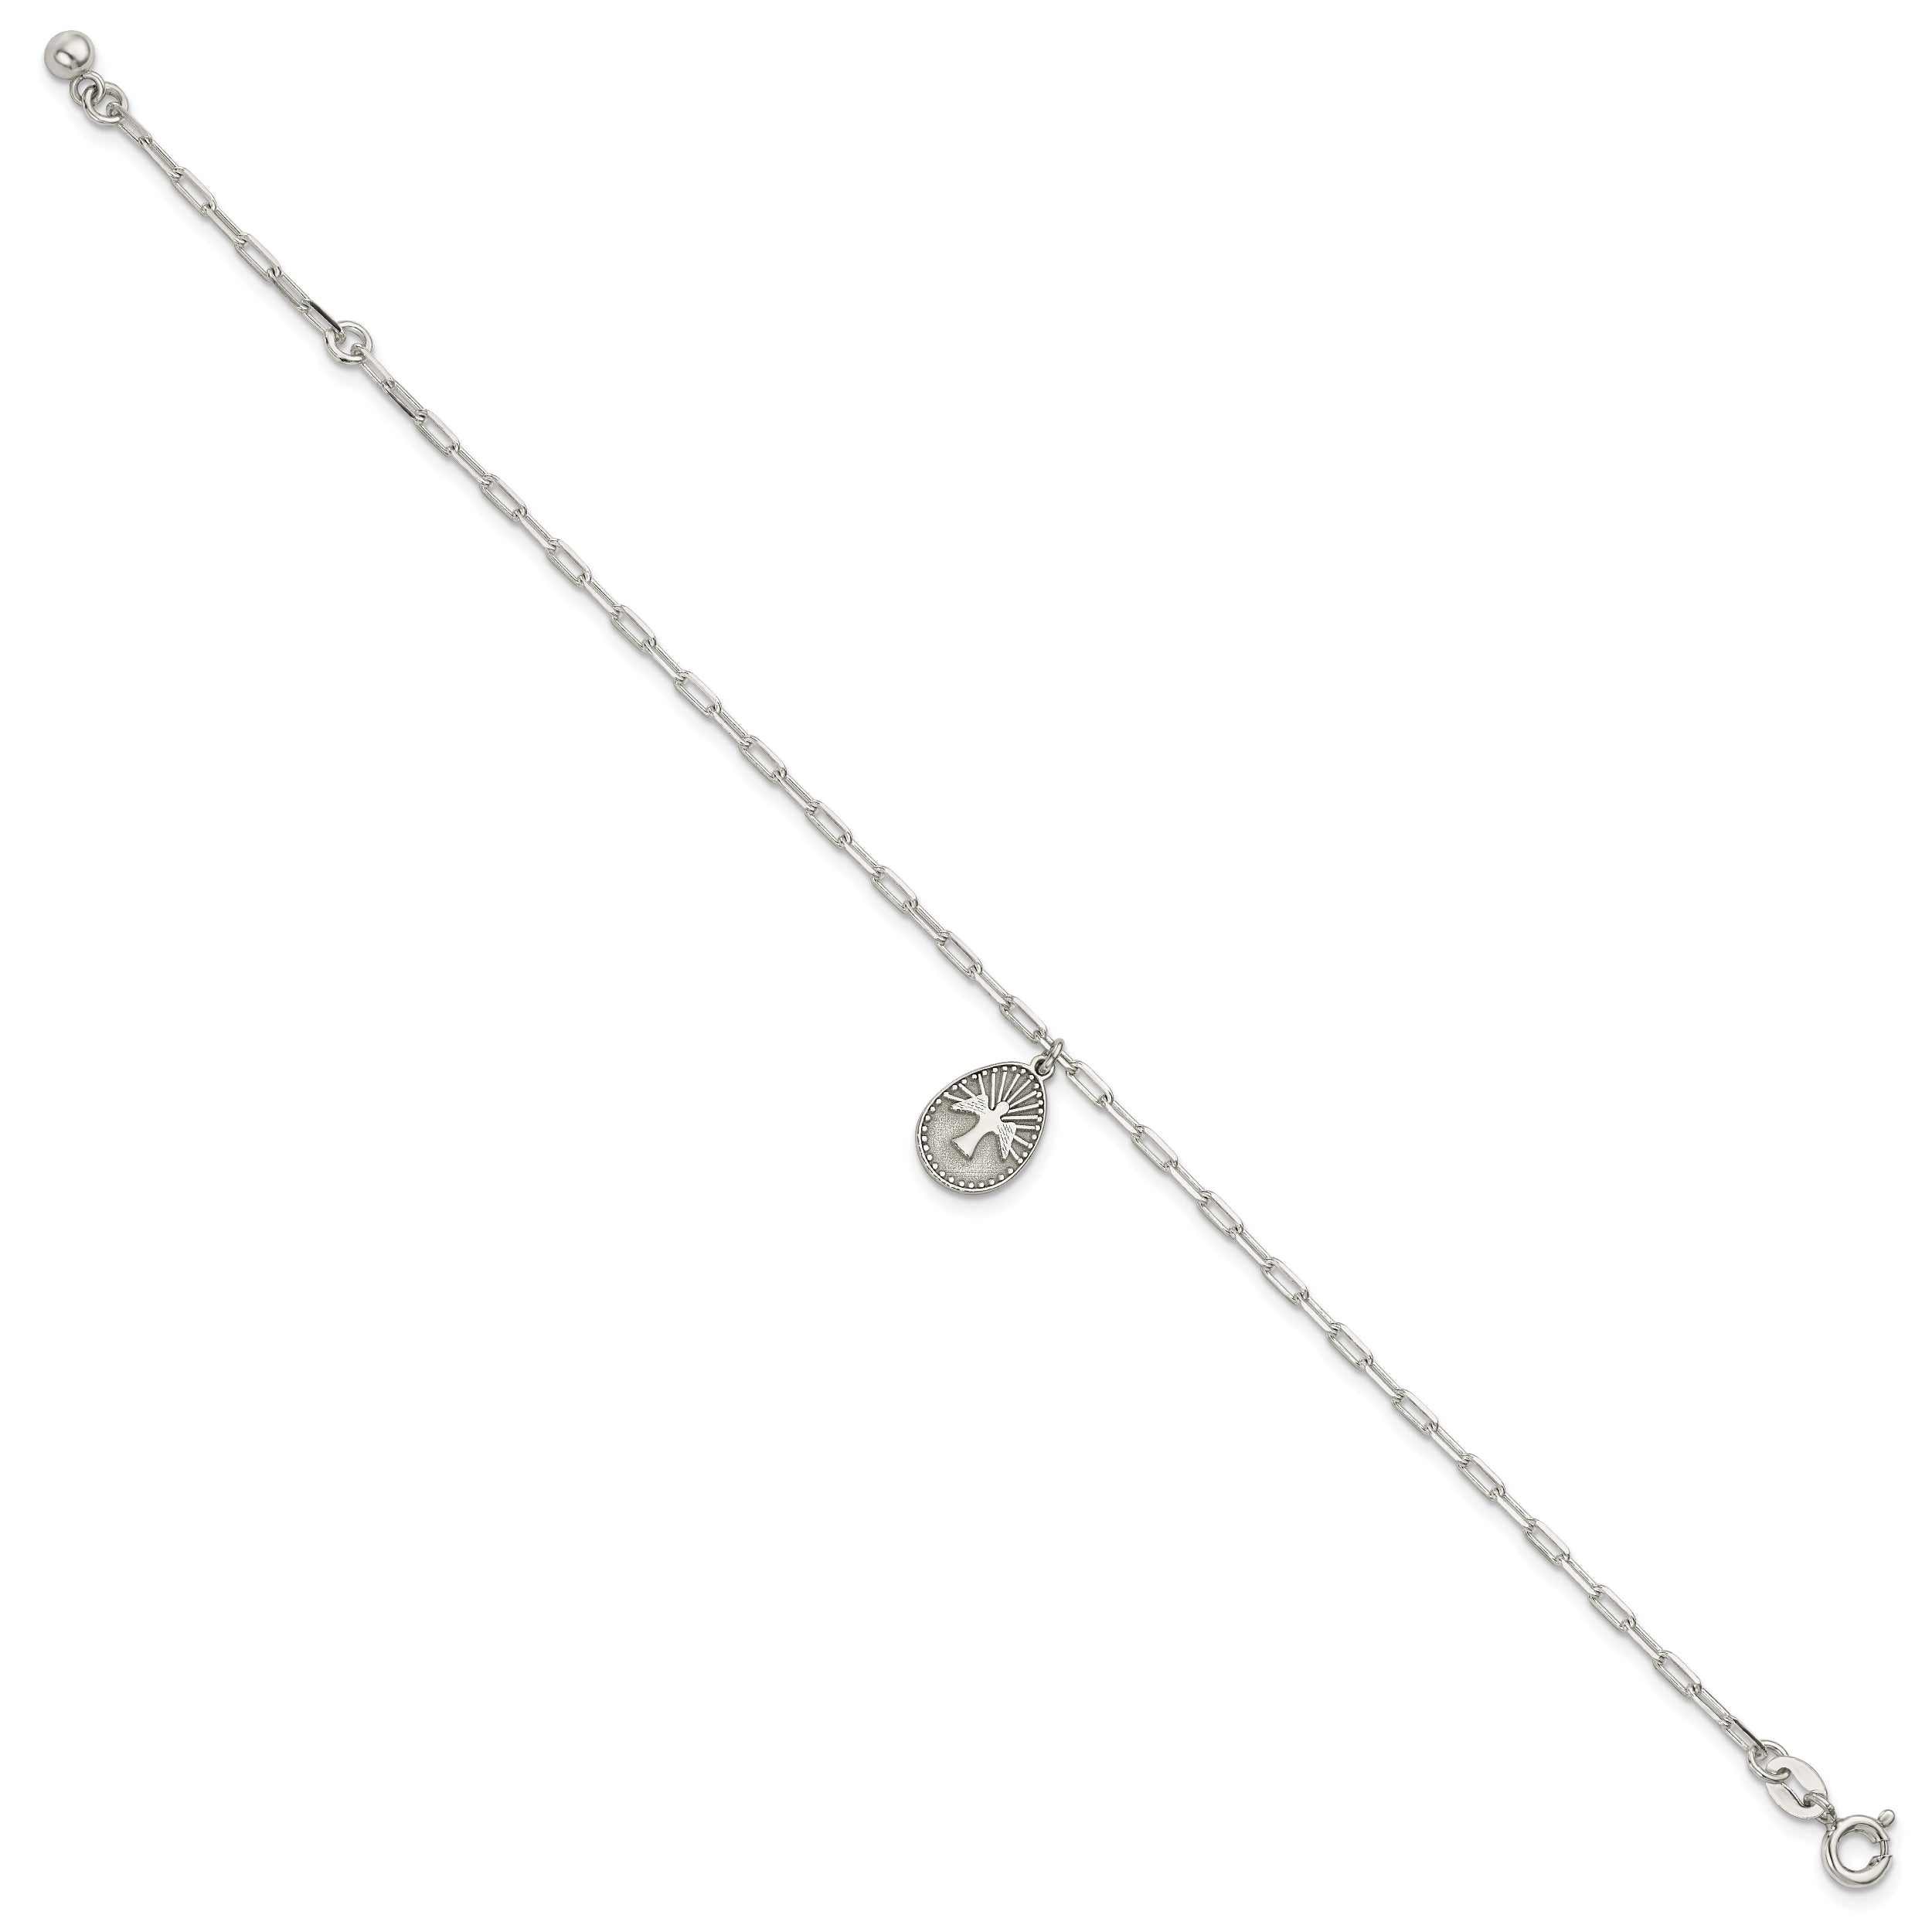 Sterling Silver Dove Necklace/Bracelet/Earrings Set